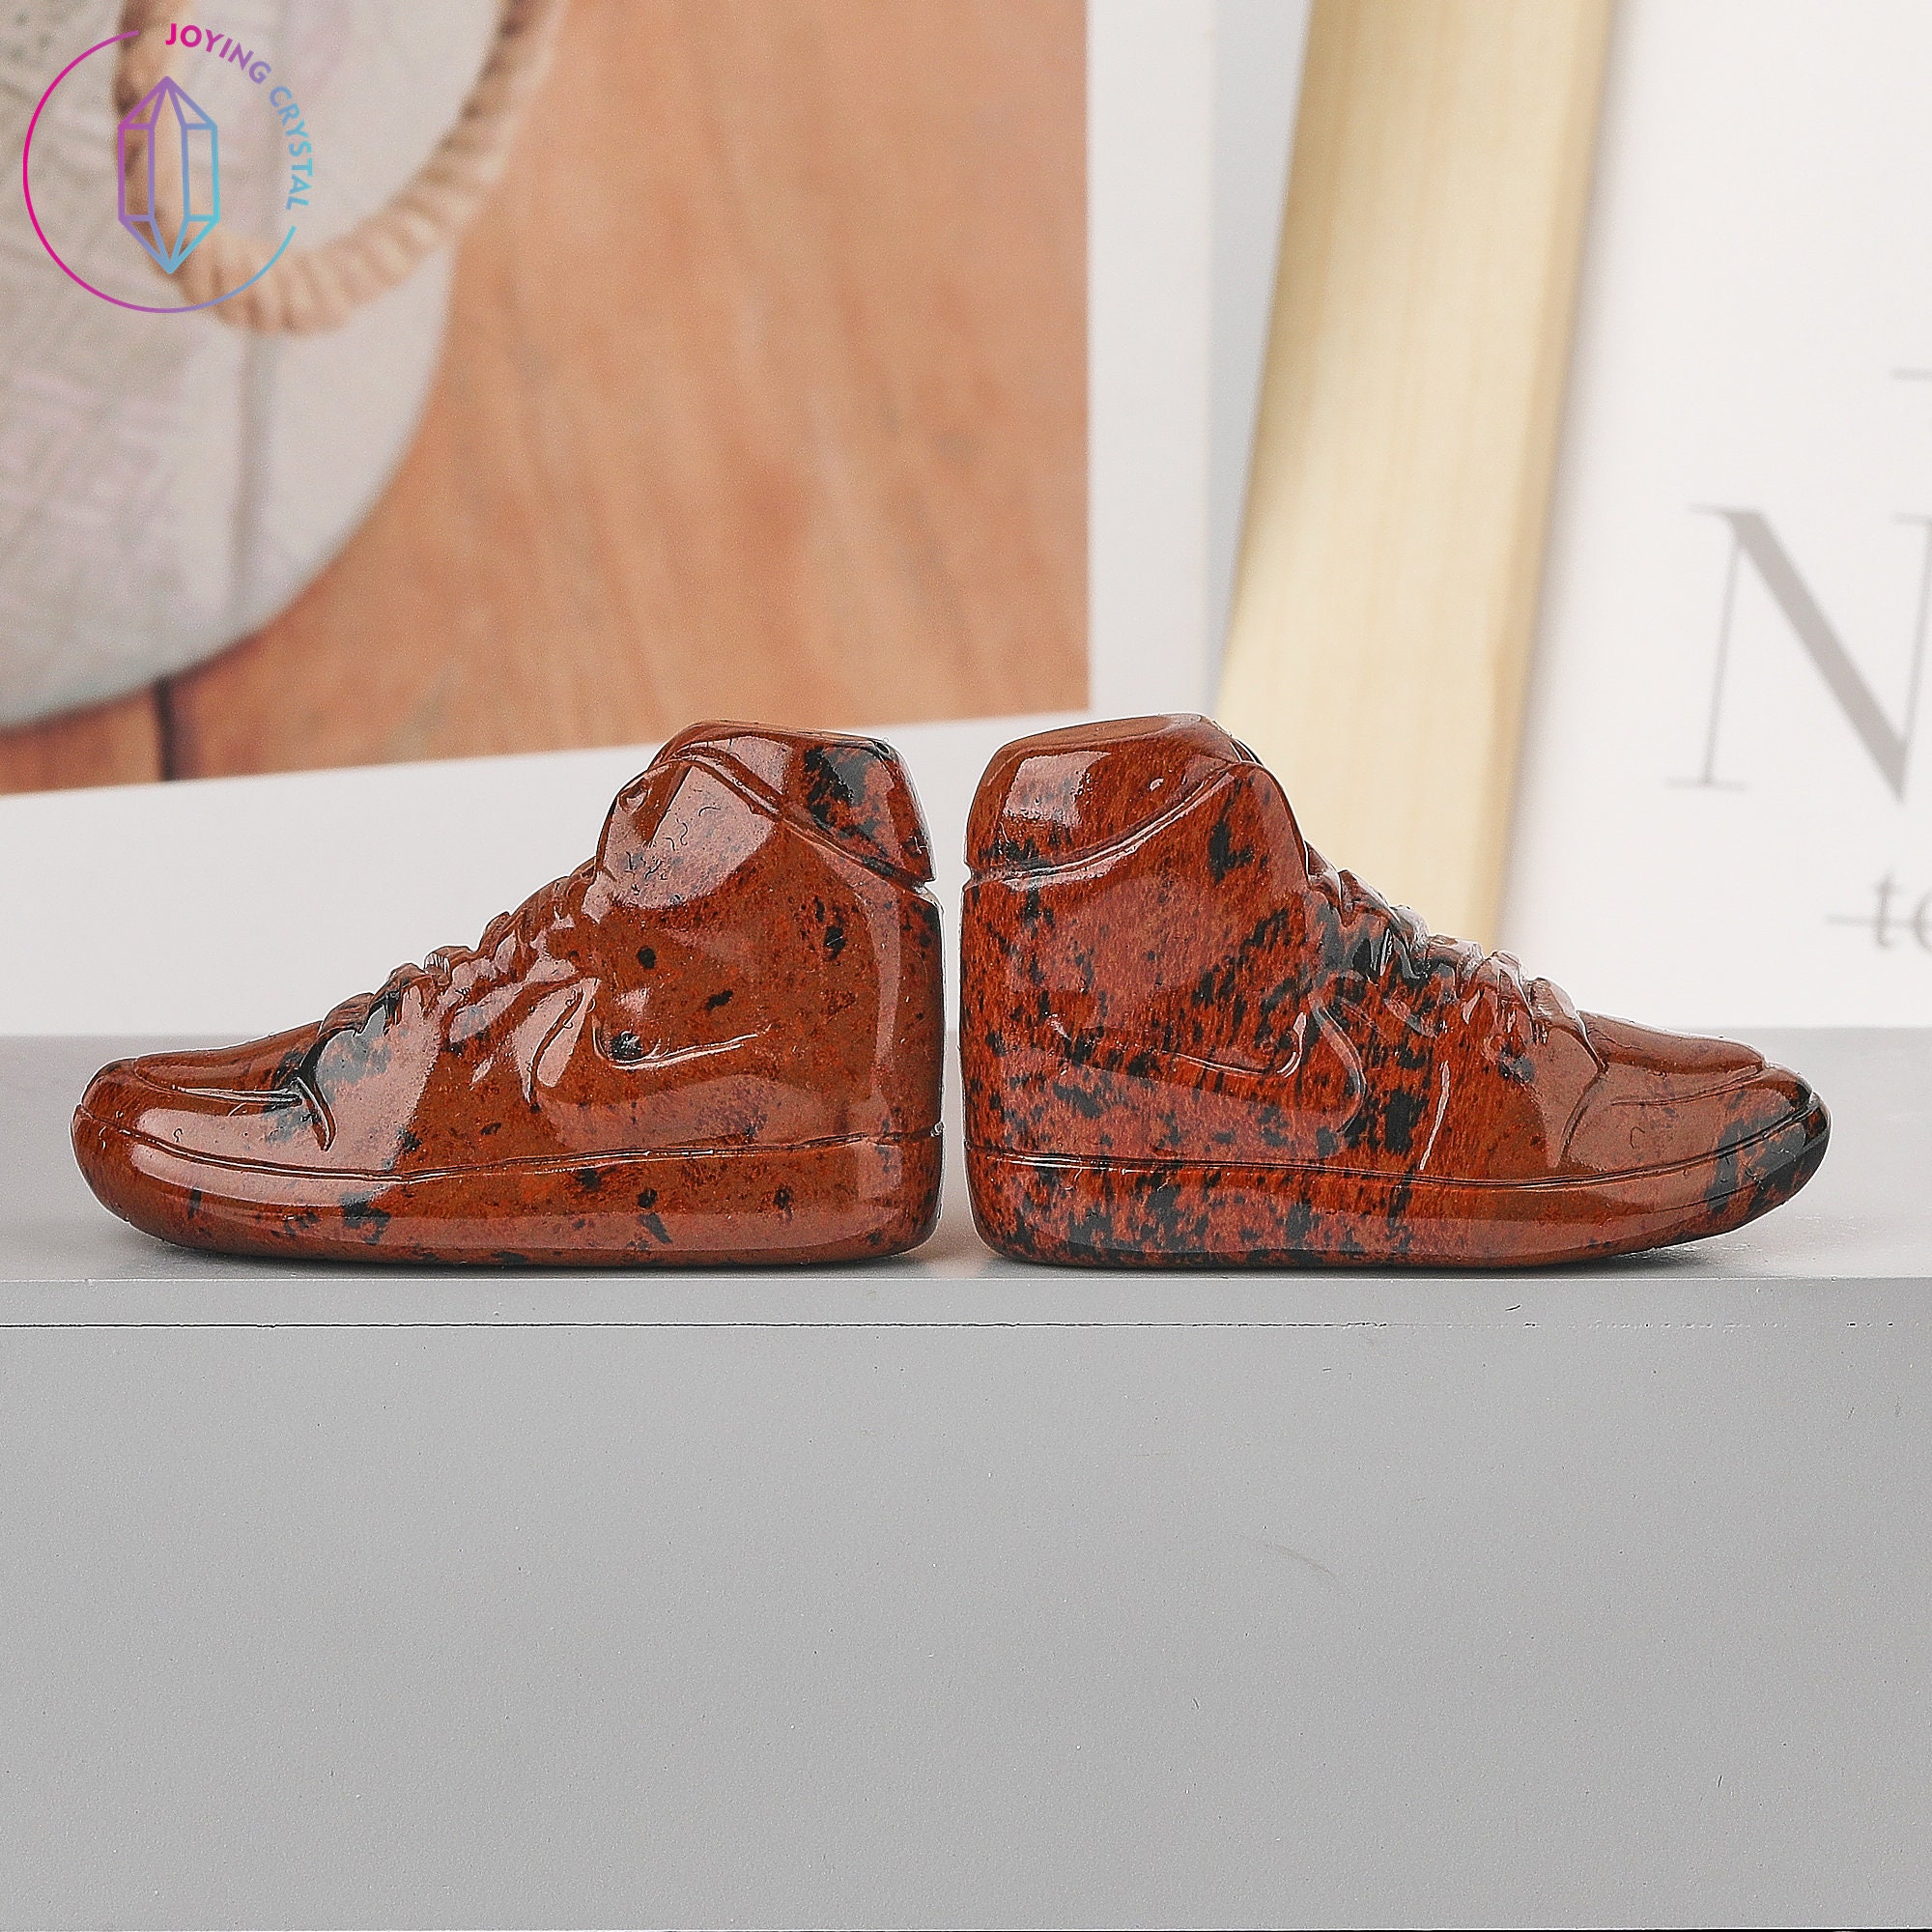 2 Incha Pair Crystal Shoes Figurinegemstone Sneaker -  Sweden